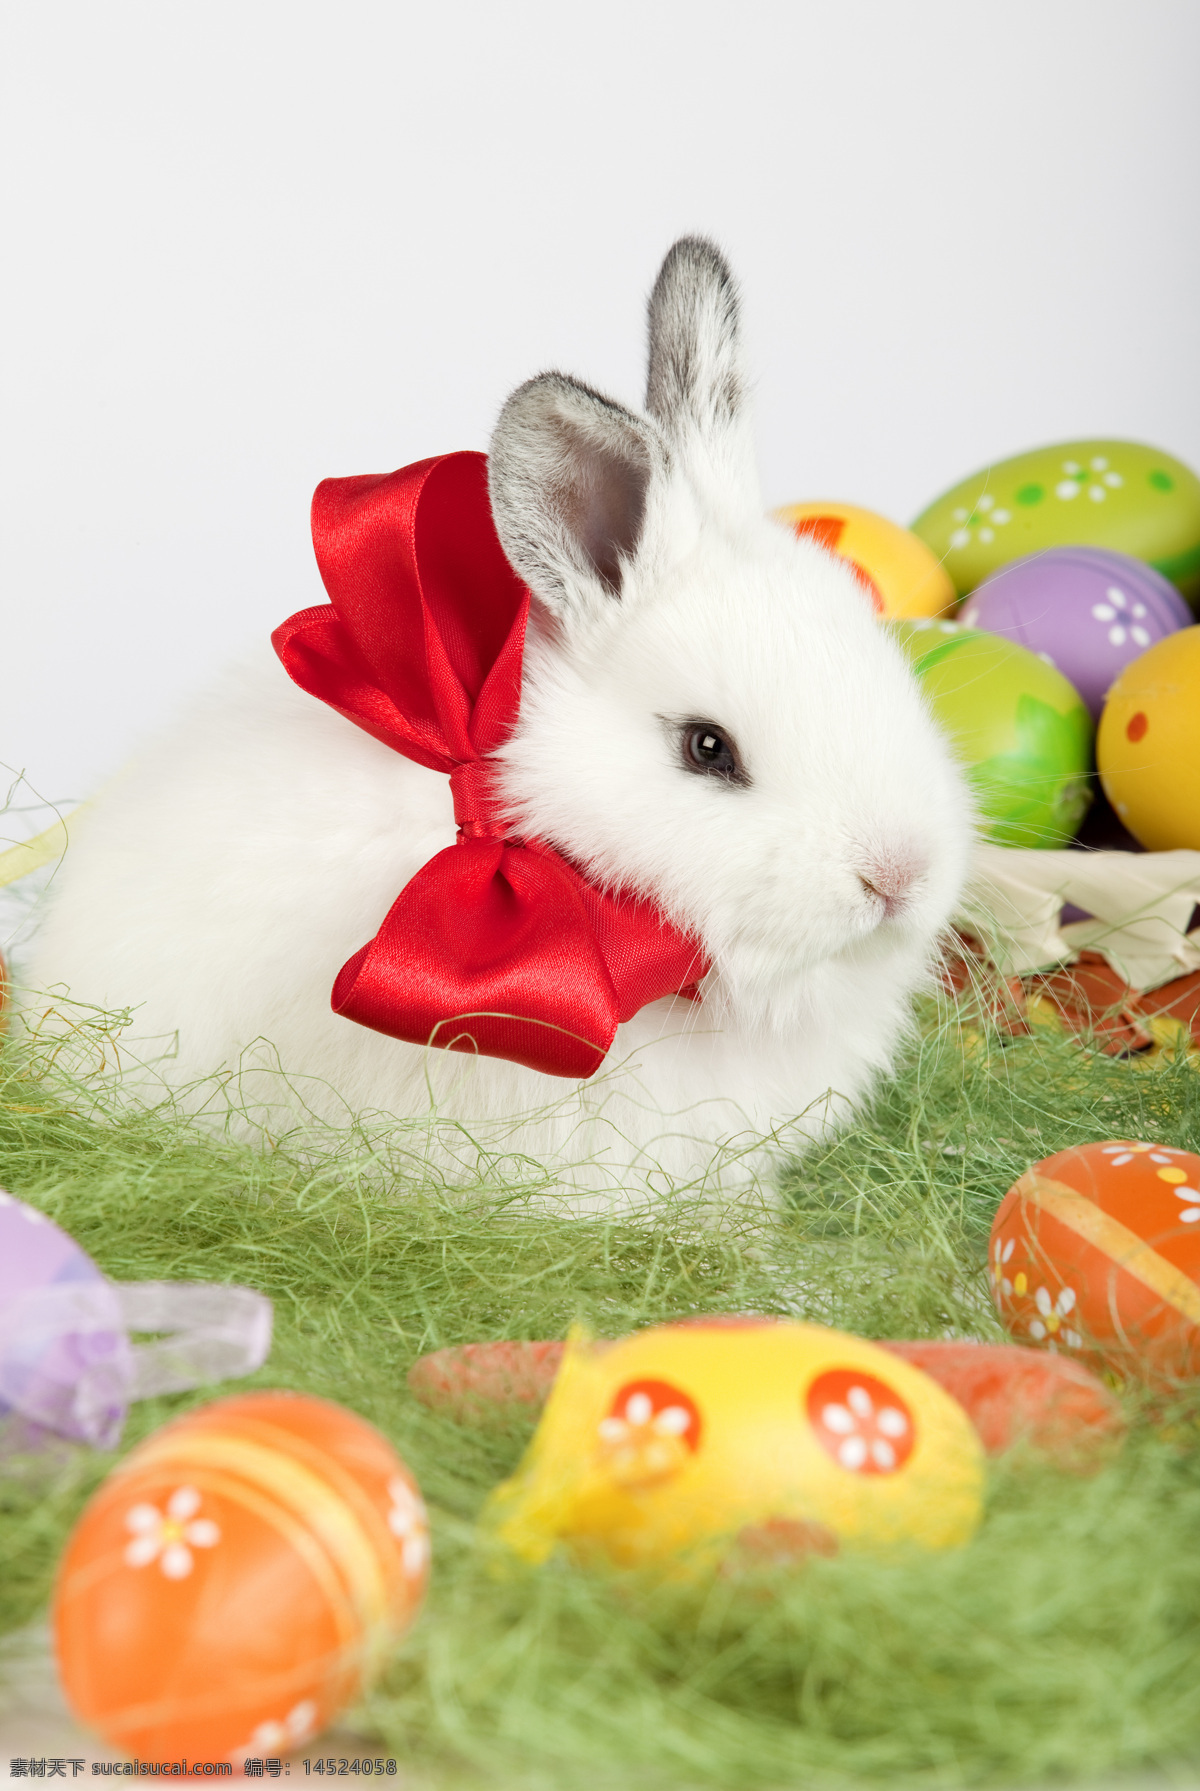 兔子 彩蛋 复活节礼物 胡萝卜 草 蝴蝶结 陆地动物 生物世界